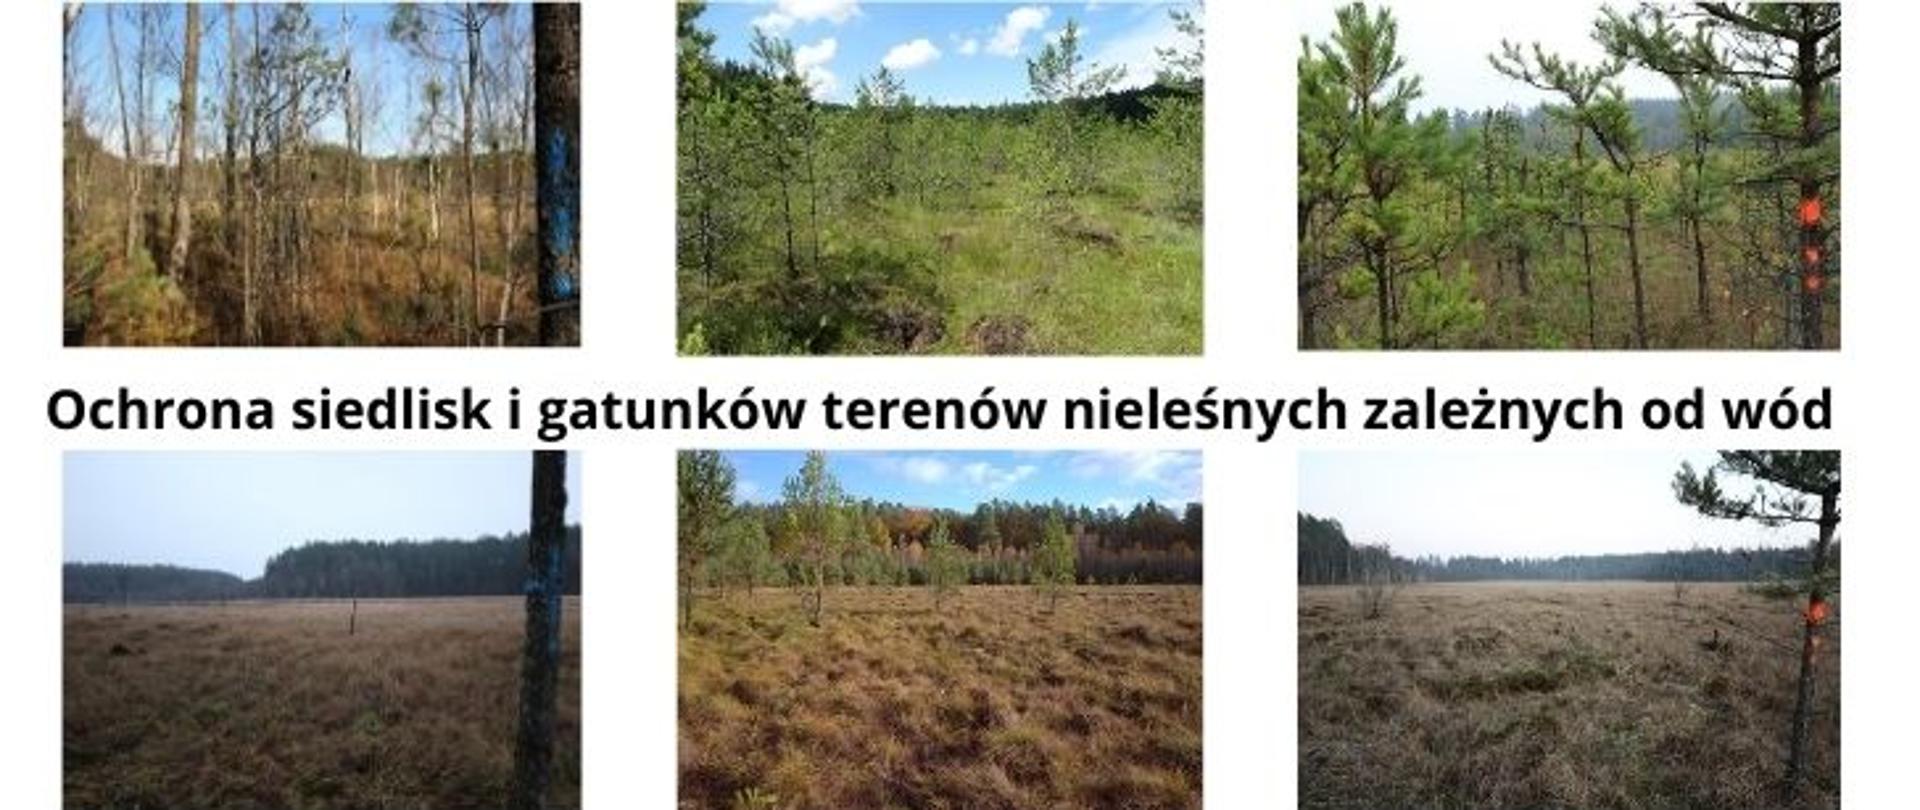 Grafika składa się z trzech części. W środkowej znajduje się nazwa projektu: Ochrona siedlisk i gatunków terenów nieleśnych zależnych od wód. W górnej części zaprezentowano trzy zdjęcia przedstawiające torfowiska w obszarach Natura 2000: Ostoja Napiwodzko-Ramucka, Ostoja Iławska, Jonkowo-Warkały sprzed okresu przeprowadzonych prac, polegających na wycince drzew i krzewów wraz z usunięciem powstałej biomasy. W dolnej części grafiki znajdują się zdjęcia torfowisk w tych samych obszarach Natura 2000, wykonane po przeprowadzeniu prac związanych z usunięciem drzew i krzewów z terenów mokradłowych.